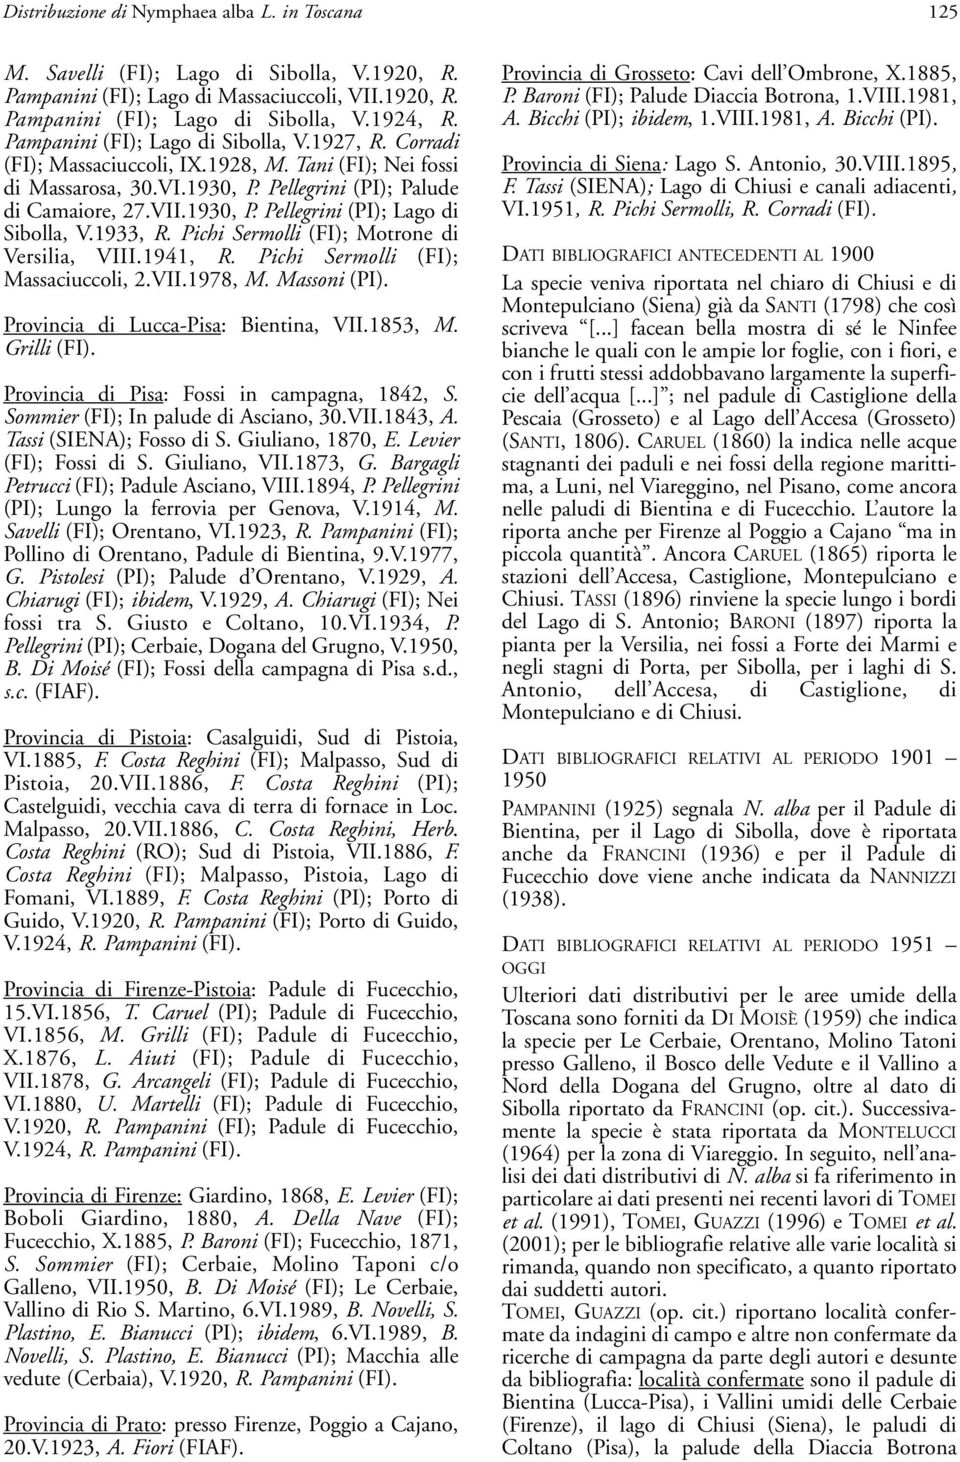 1933, R. Pichi Sermolli (FI); Motrone di Versilia, VIII.1941, R. Pichi Sermolli (FI); Massaciuccoli, 2.VII.1978, M. Massoni (PI). Provincia di Lucca-Pisa: Bientina, VII.1853, M. Grilli (FI).